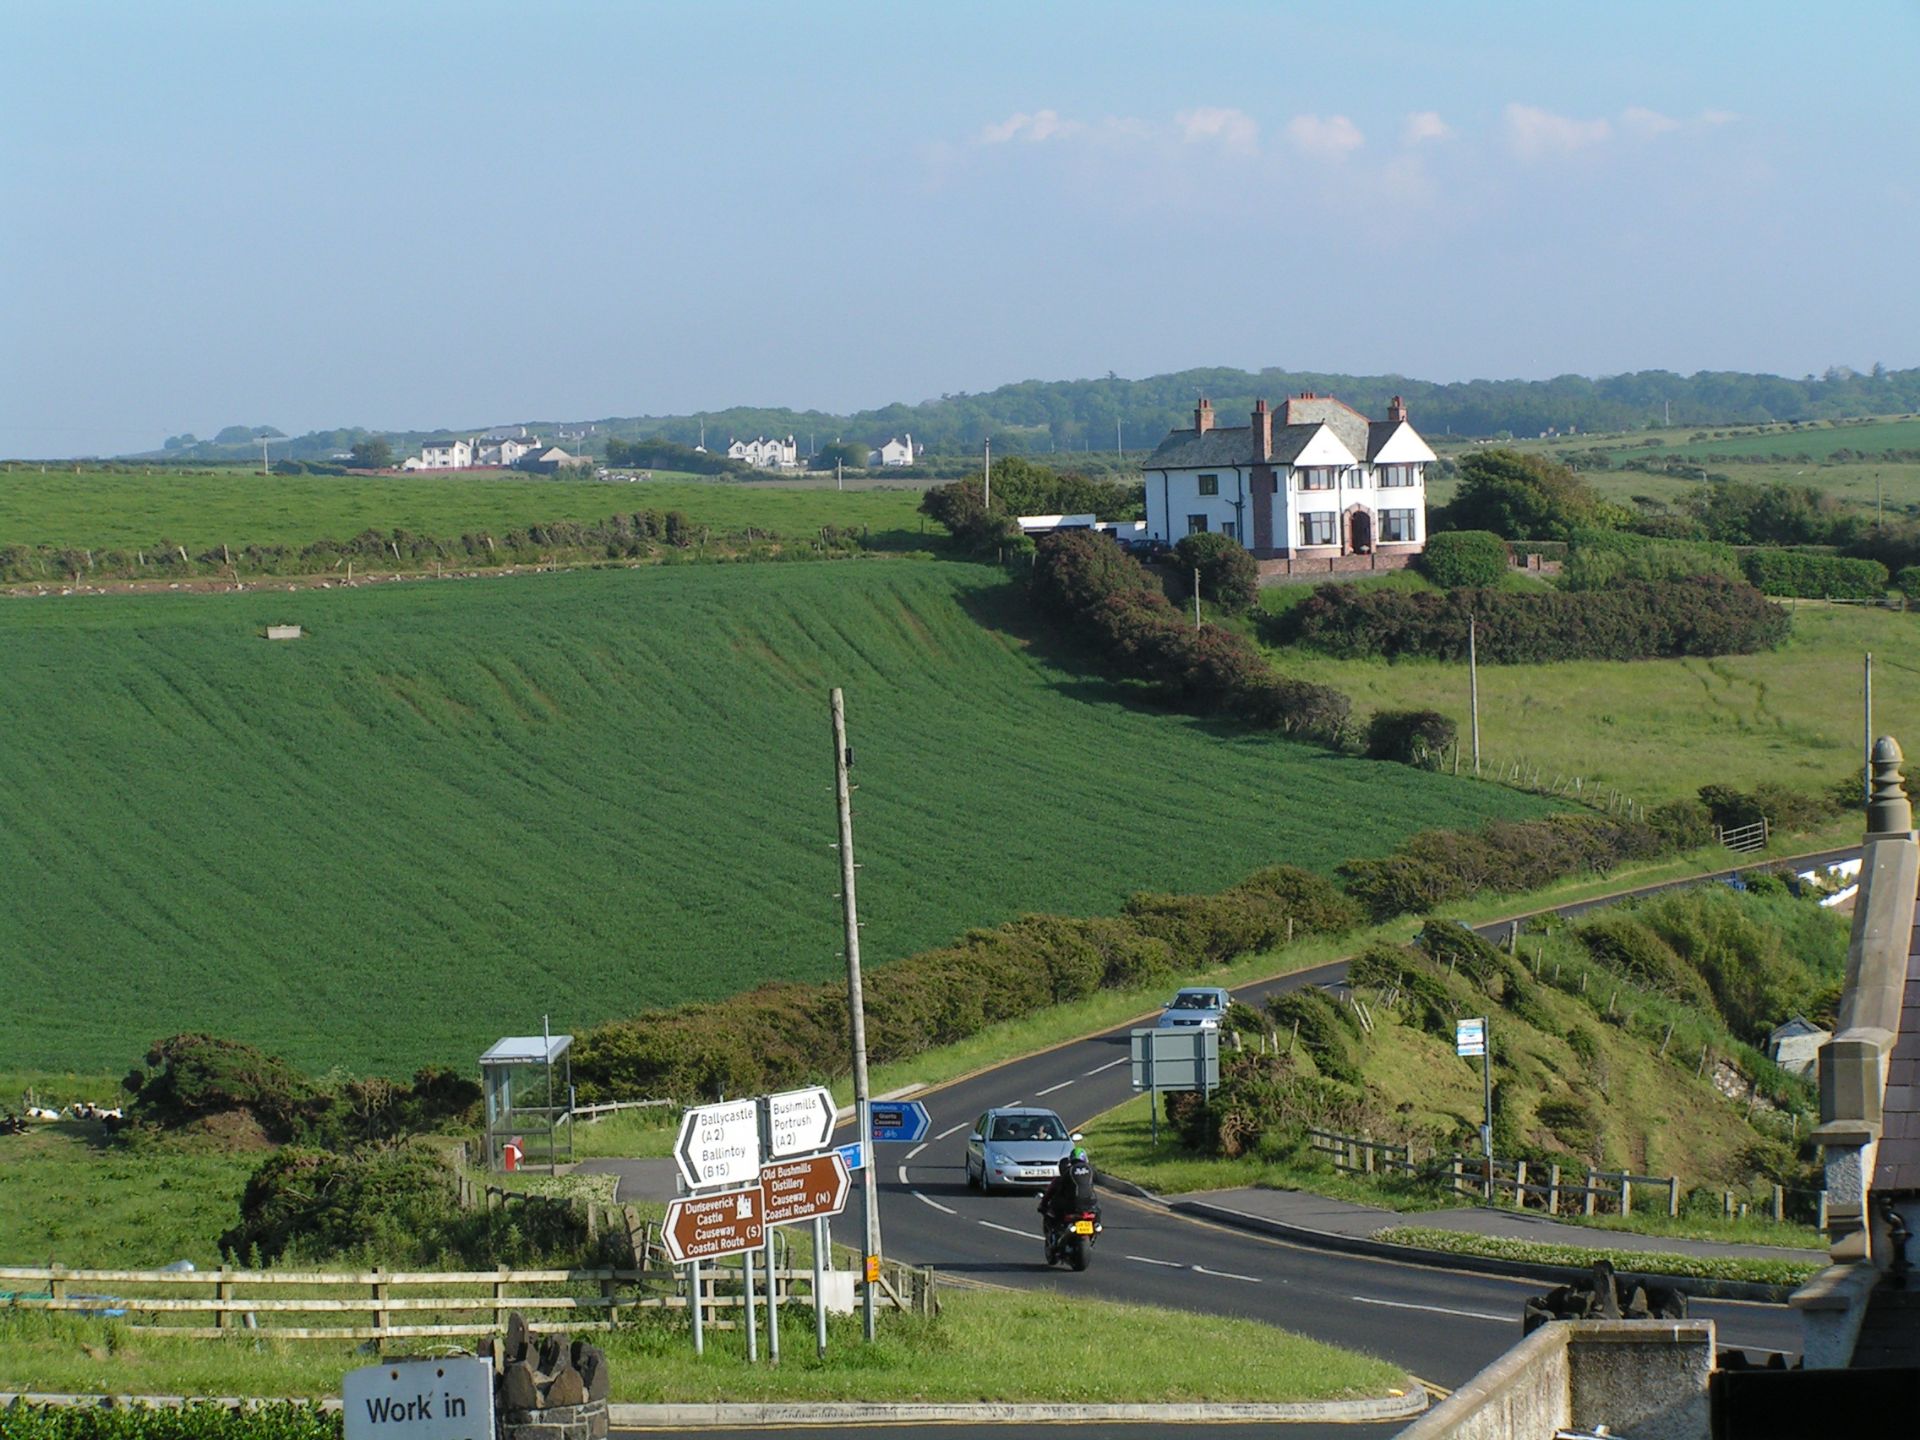 A2是北爱尔兰的一条主要道路，其相当长的路段通常被称为安特里姆海岸路，因为它大部分沿安特里姆郡风景秀